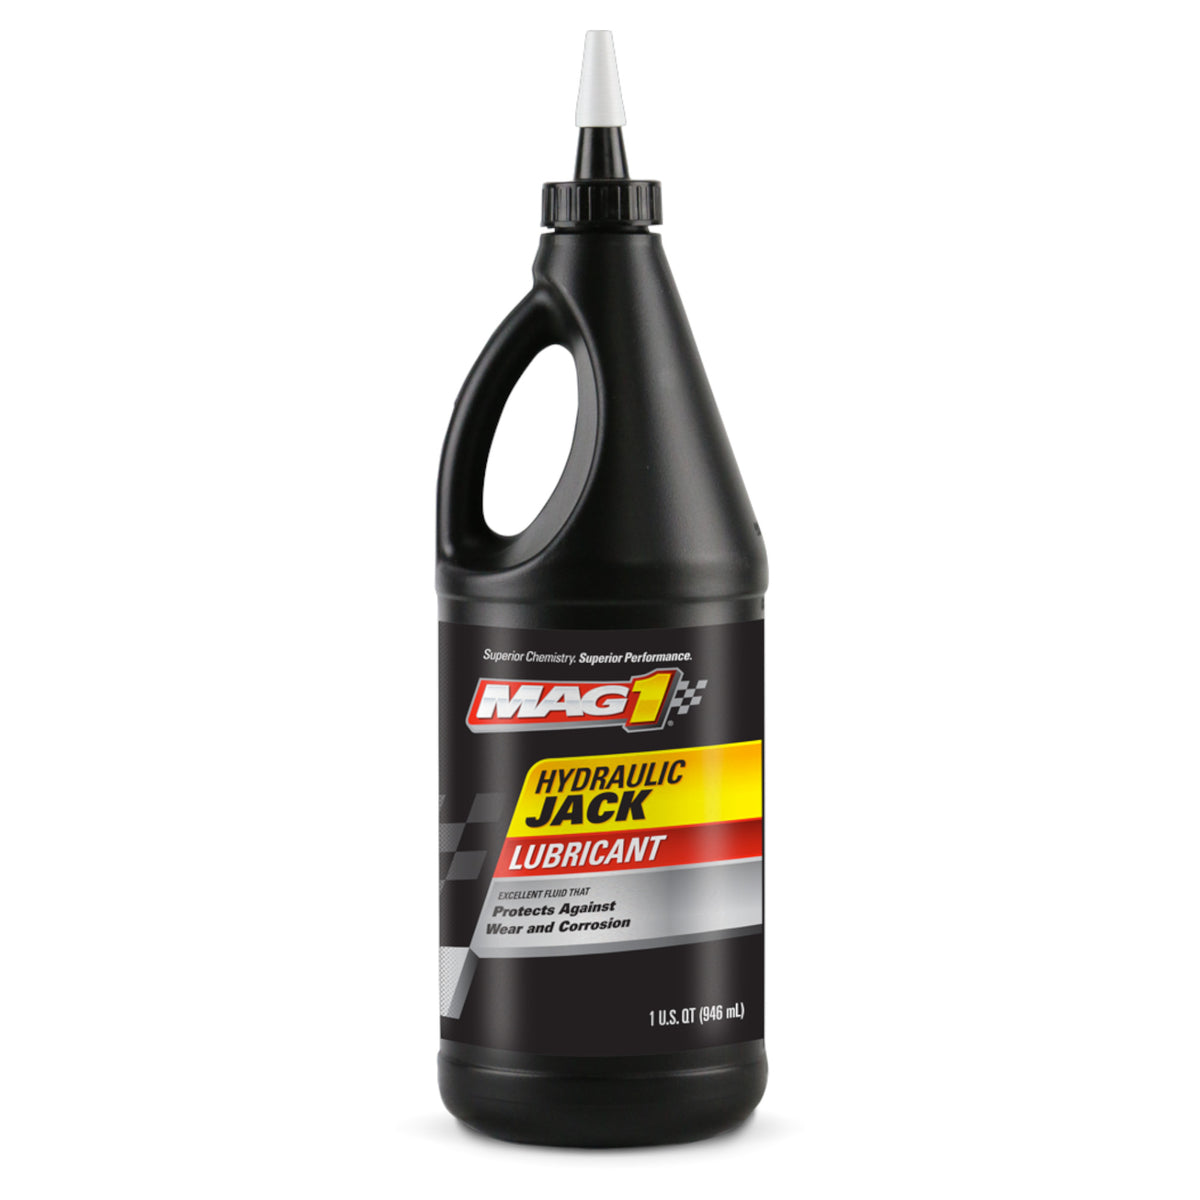 Mag 1 Hydraulic Jack Oil (1 Quart) (00925)